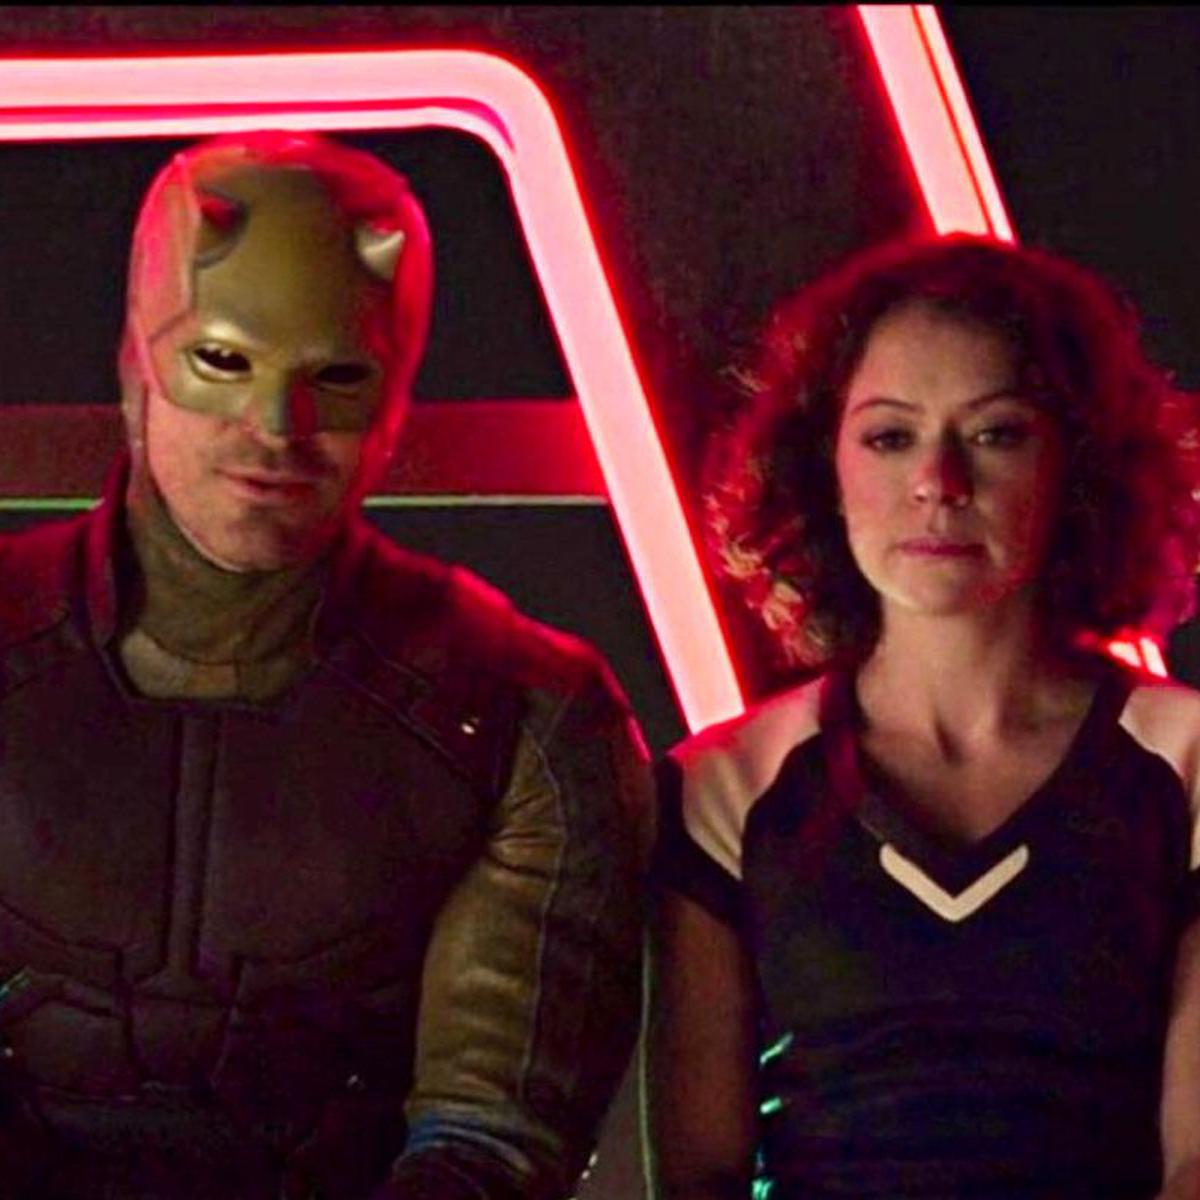 She-Hulk' y los cameos de personajes del MCU que tendrá la serie:  Daredevil, Wong, Abomination y más, Entretenimiento Cine y Series